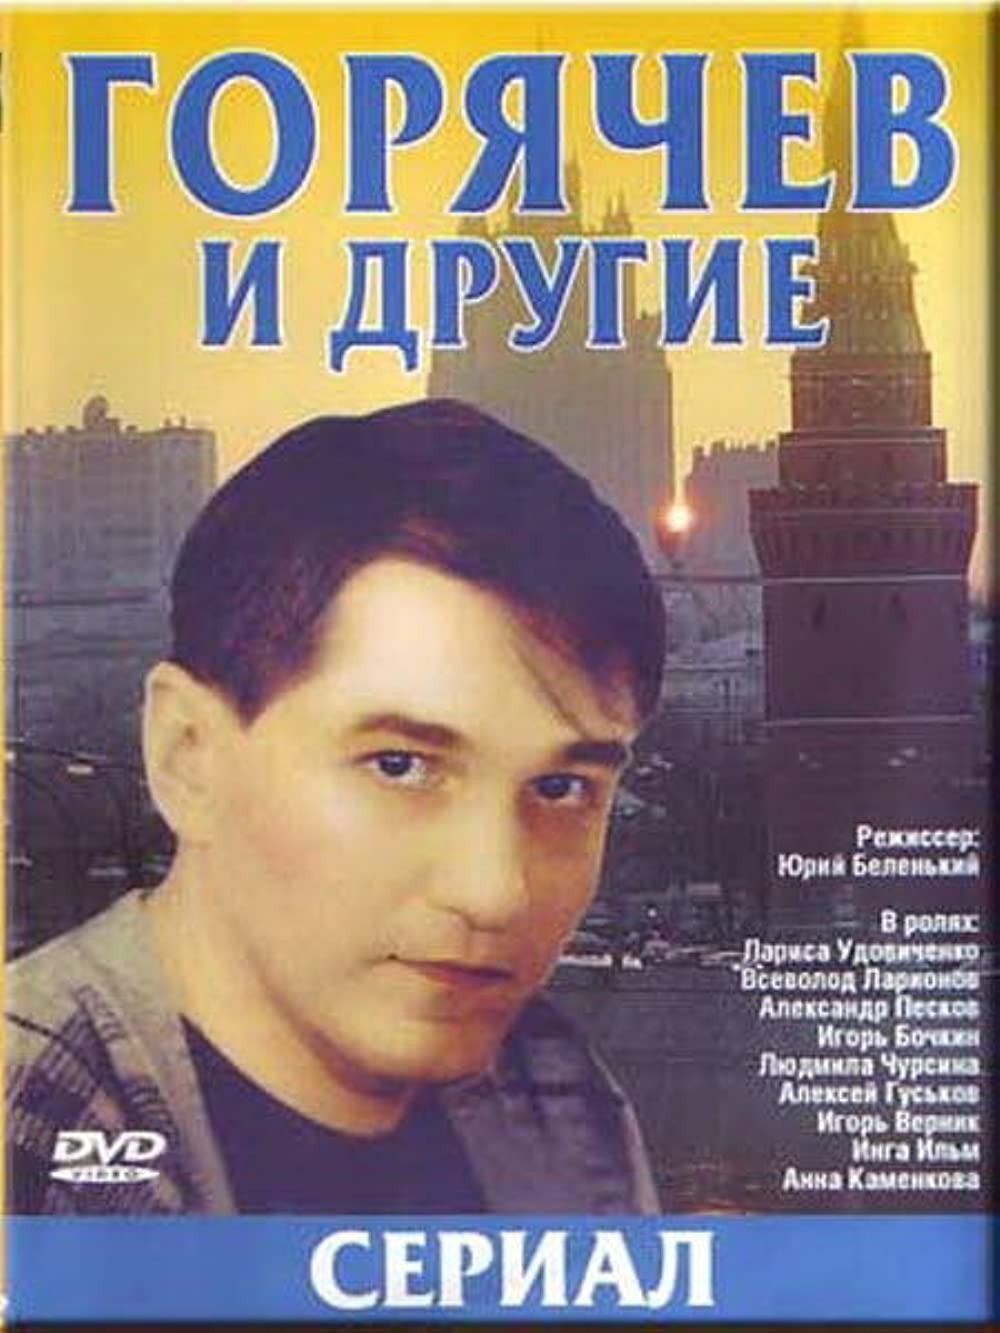 Горячев и другие: постер N215418